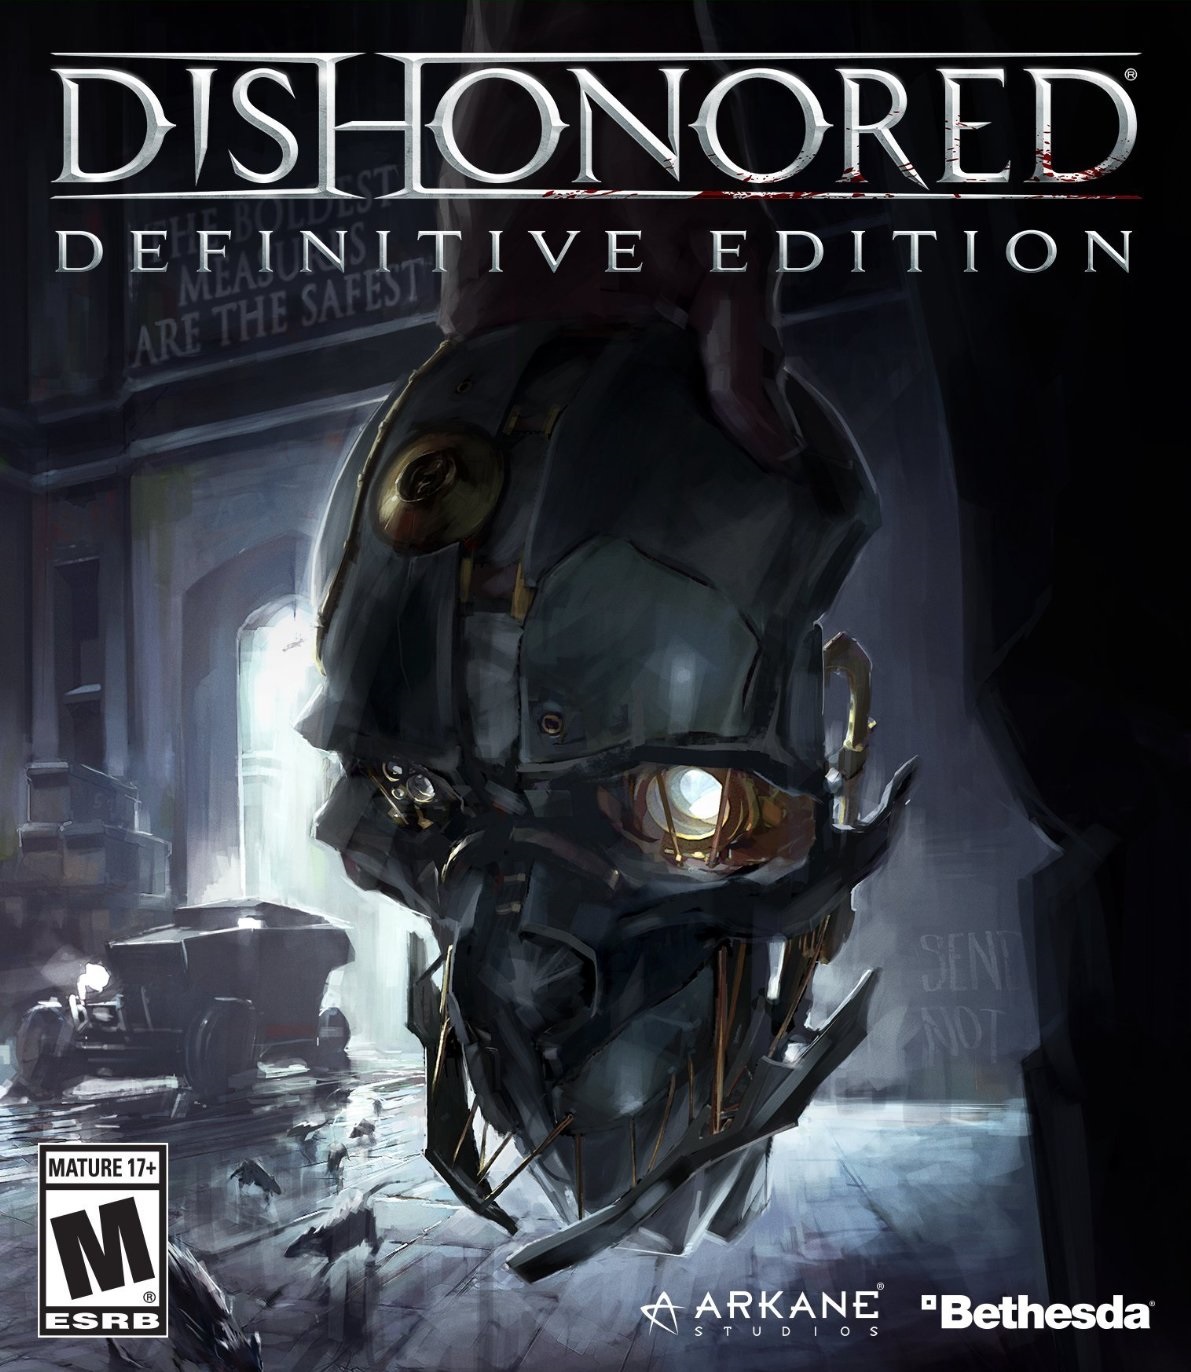 Dishonored, Dishonored Wiki